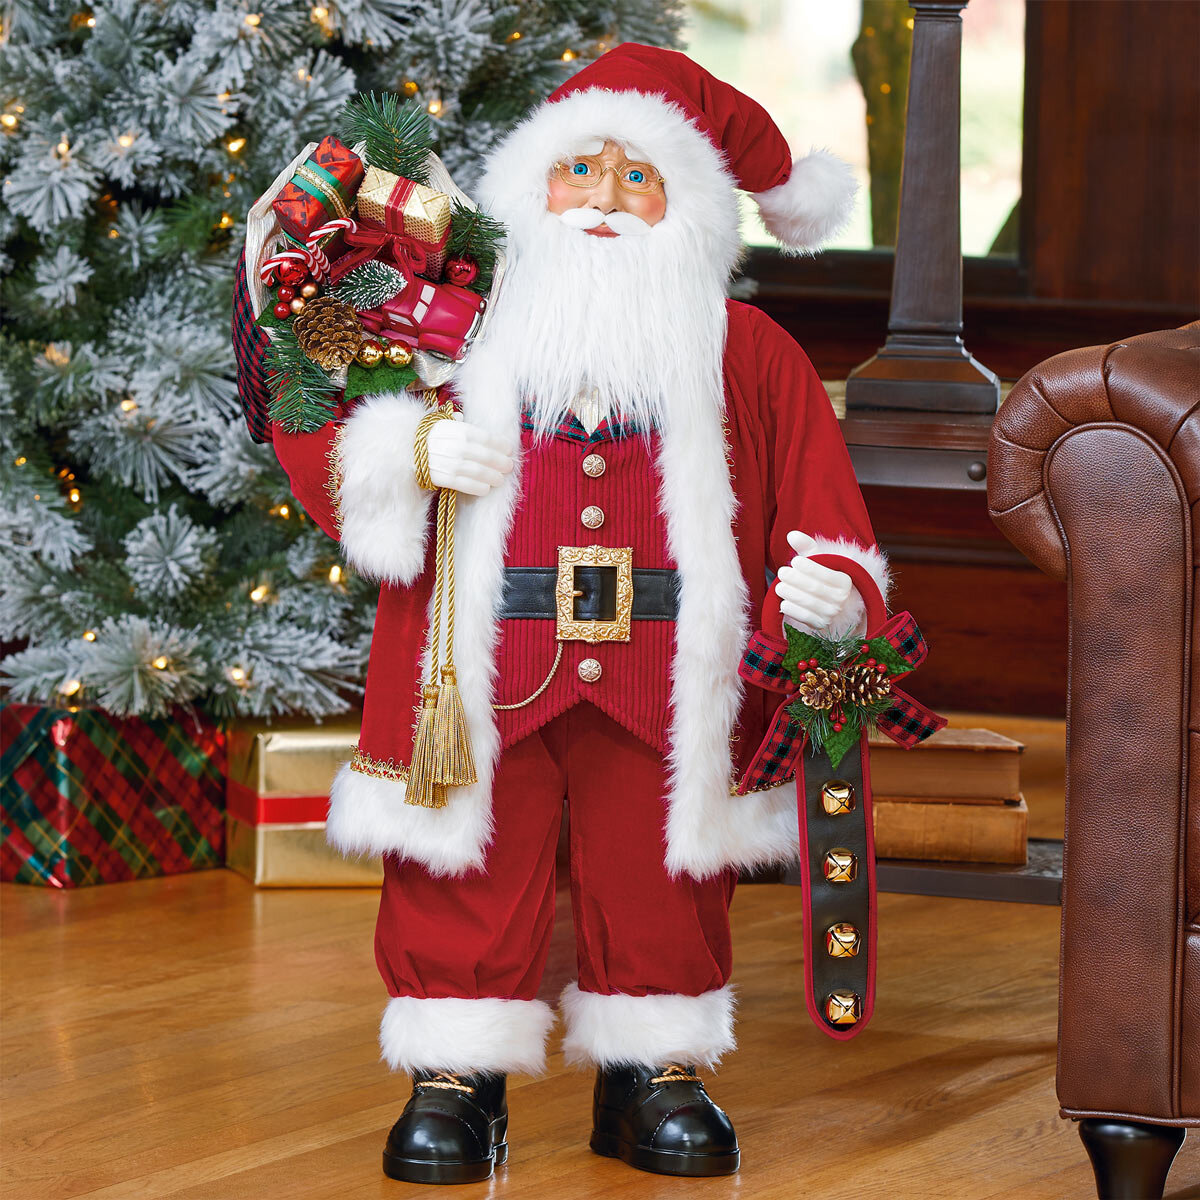 Buy 36" Fabric Santa Back Image at Costco.co.uk